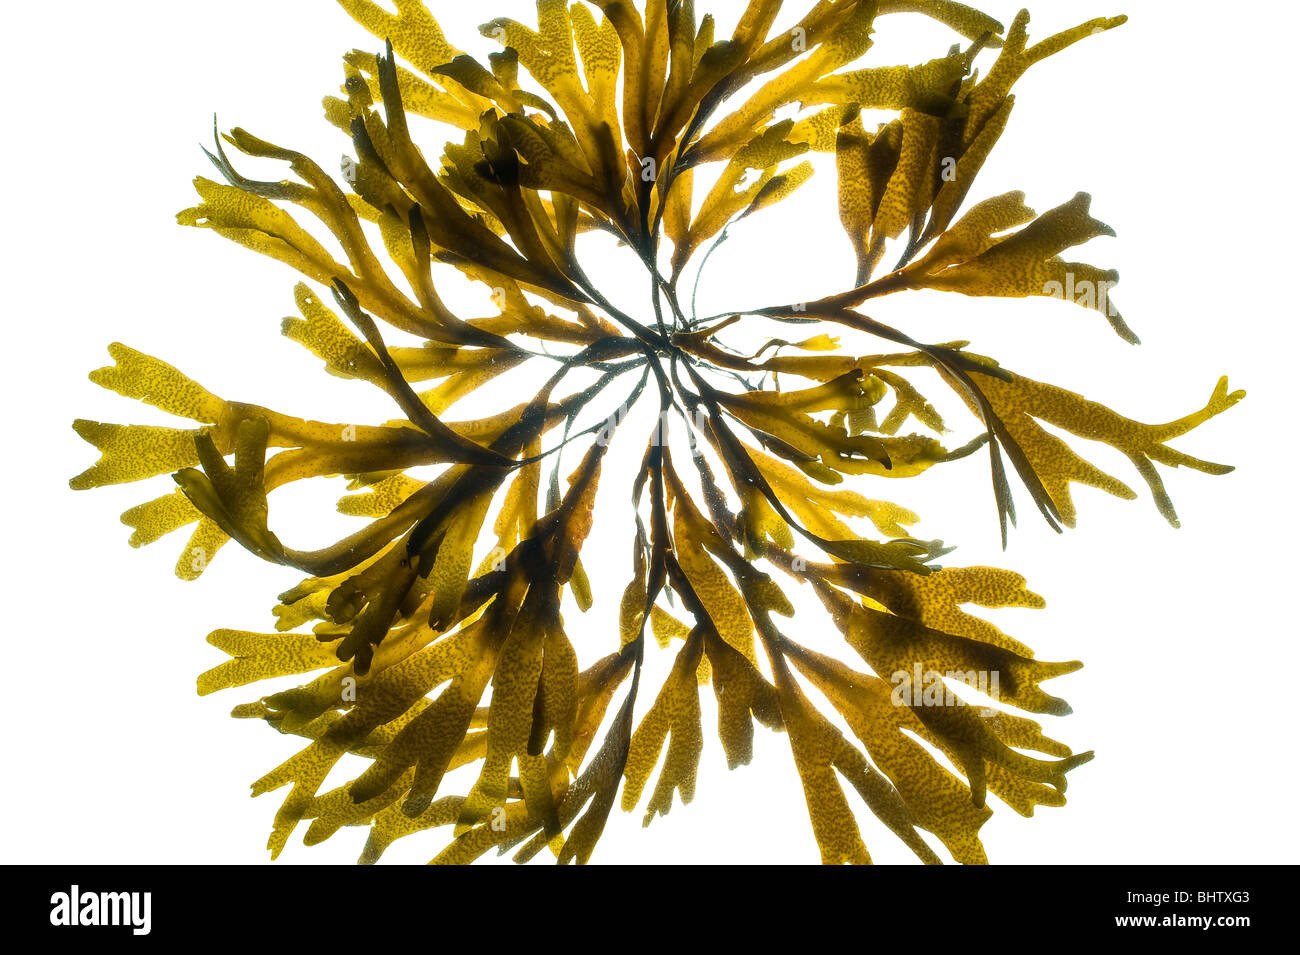 Alga marina Fucus Vesiculosus sospeso in acqua Foto Stock